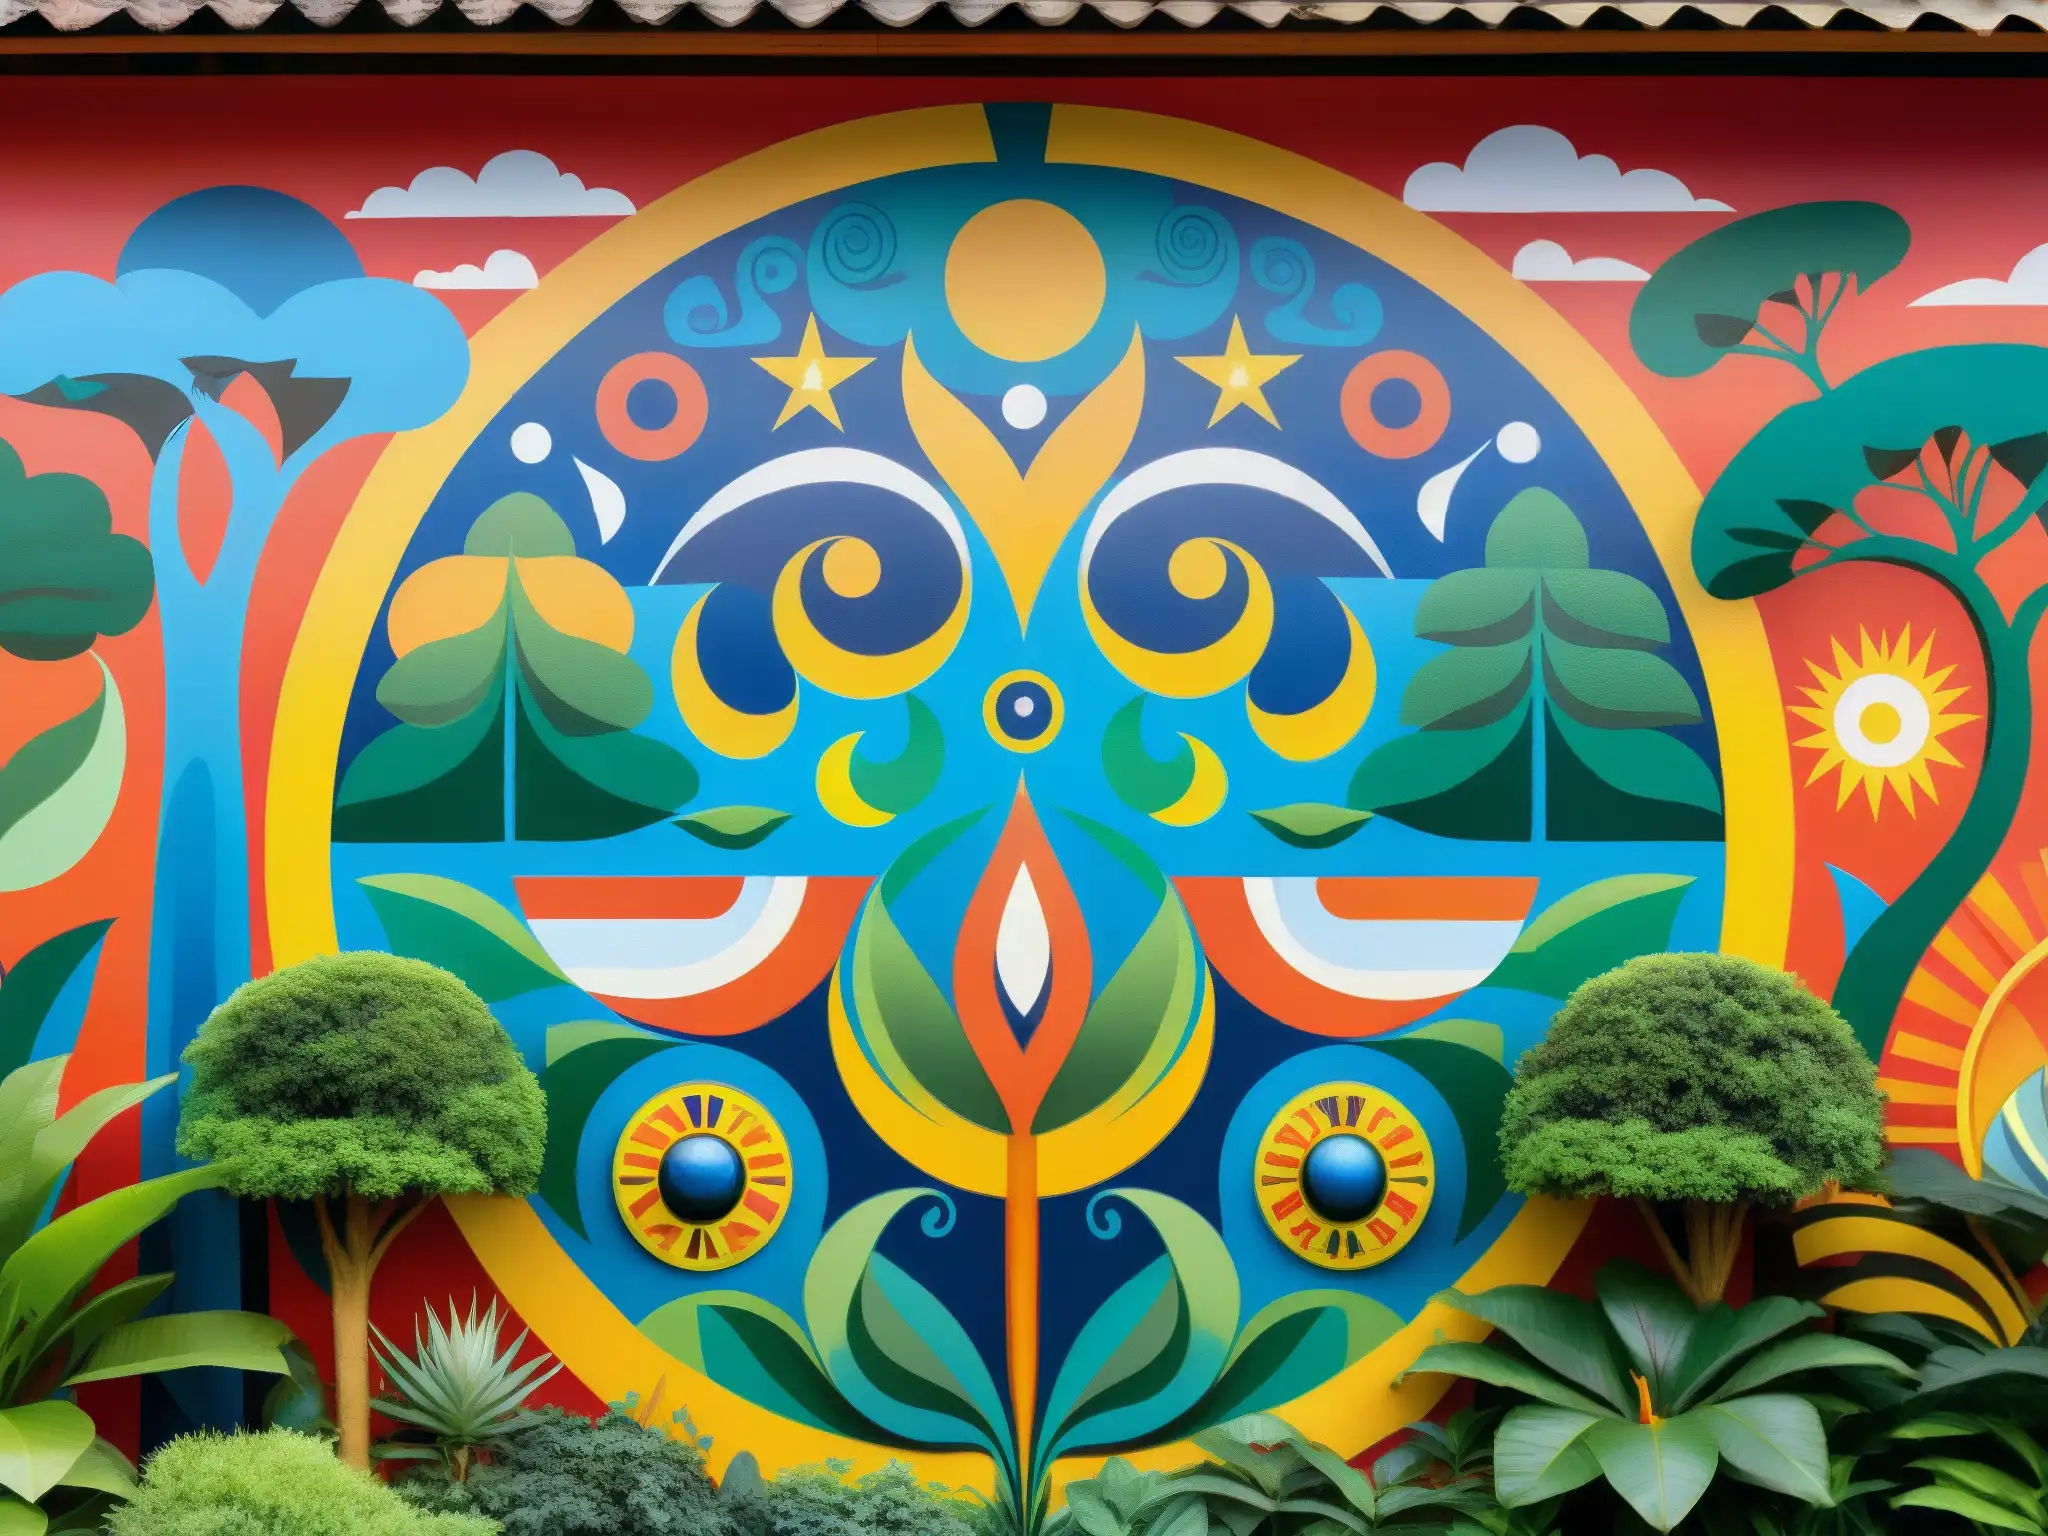 Vibrante mural del mito de la creación guaraní, con detalles de Tupã creando el mundo y la gente, rodeado de exuberante naturaleza y fauna colorida